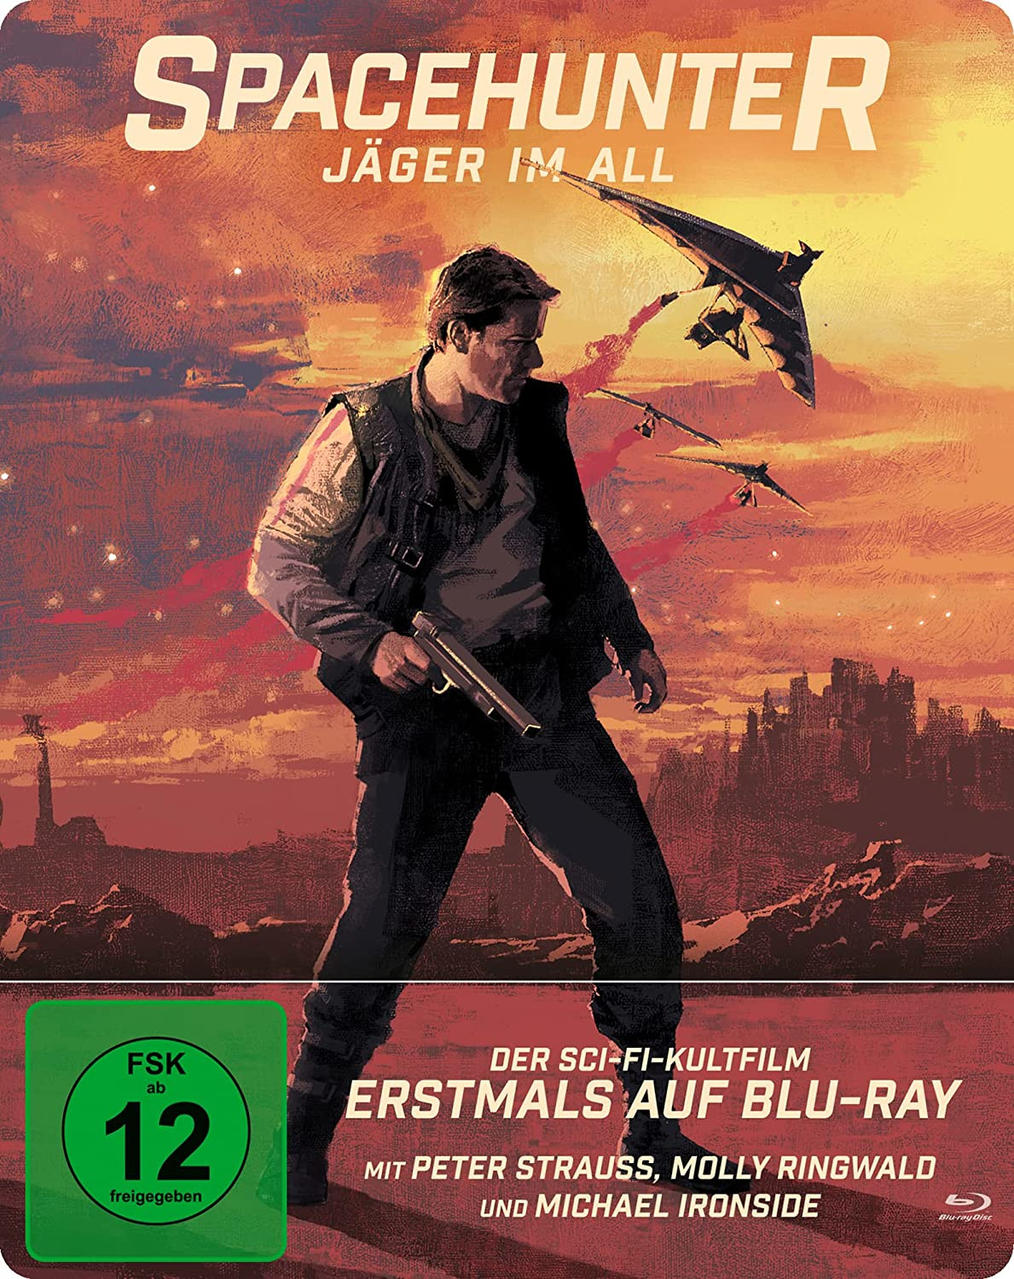 Spacehunter - Jäger im Blu-ray All